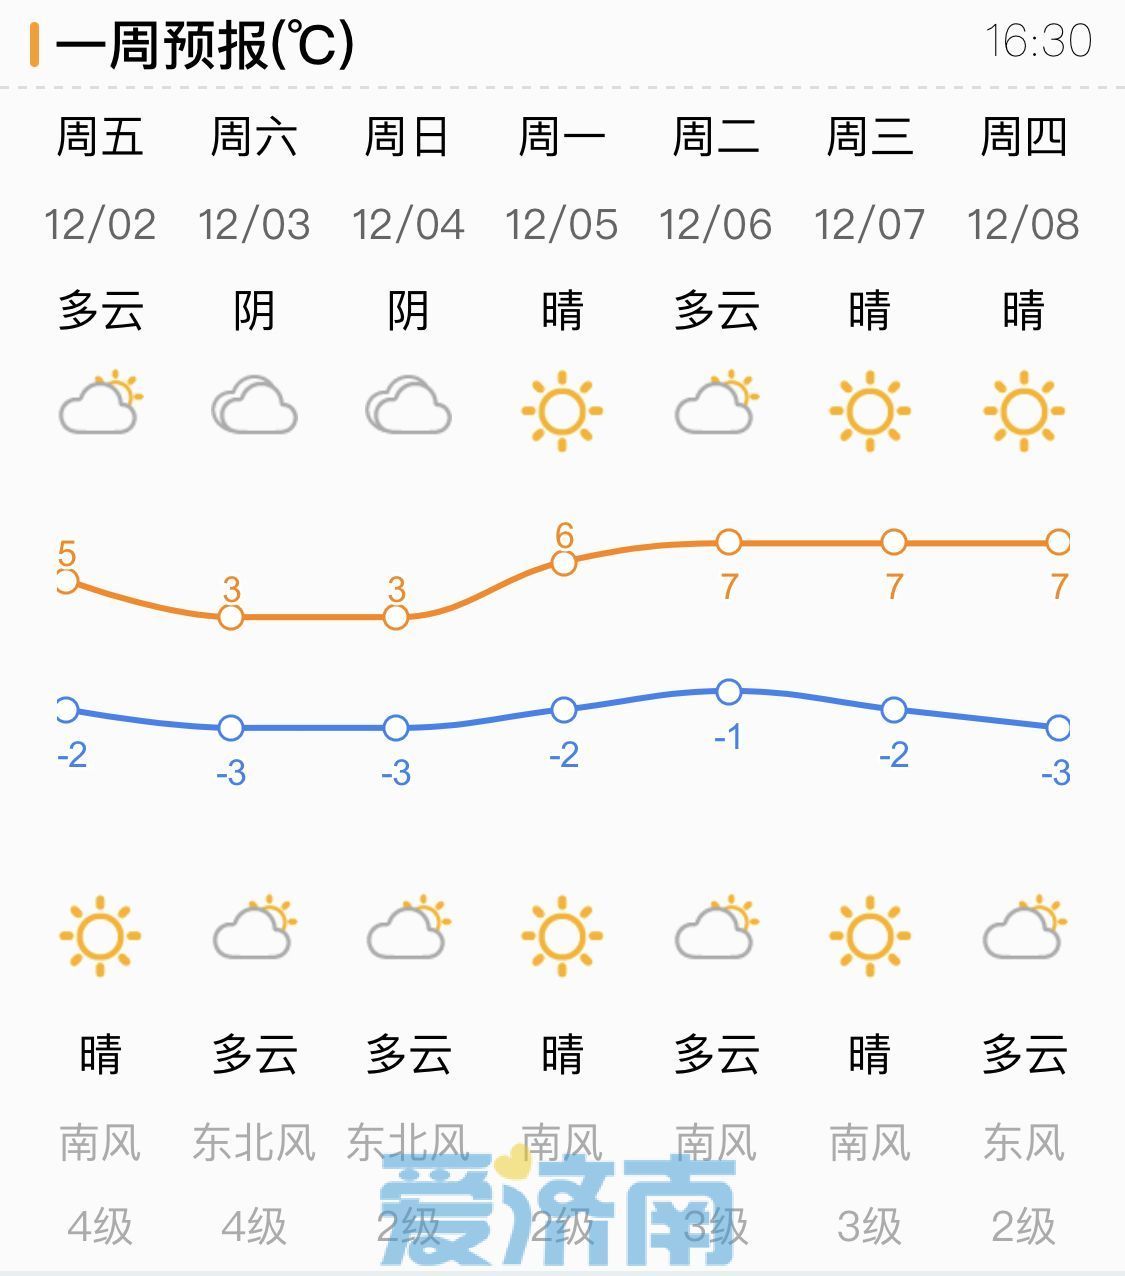 济南周末由晴转阴最高温3℃ 早晚气温低迷寒意仍在